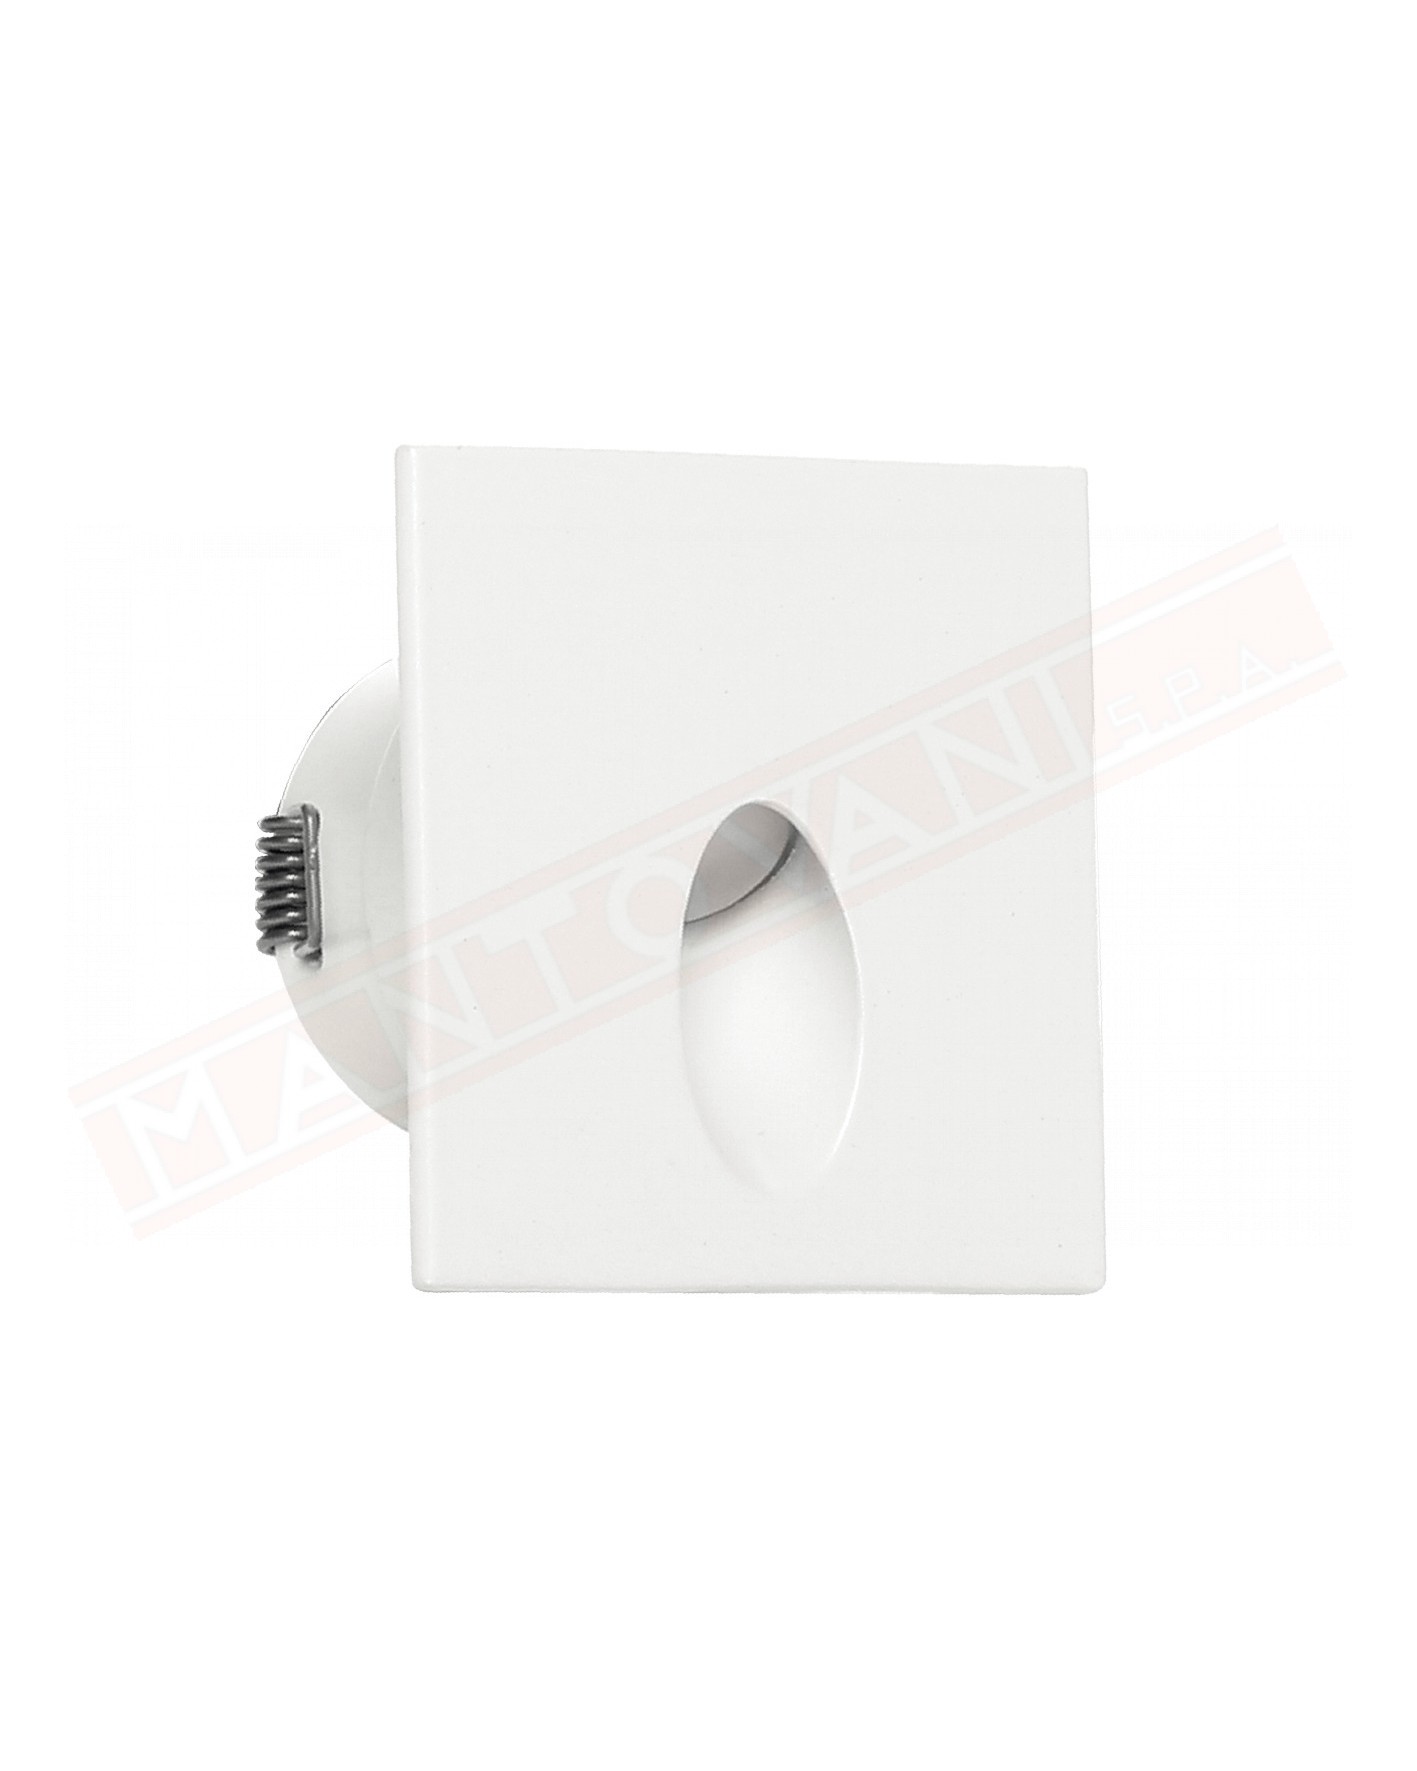 LineaLight Iled Quara-Q incasso con flangia a parete o soffitto x esterno 2 w 233 lm 3000k in alluminio bianco ral 9003